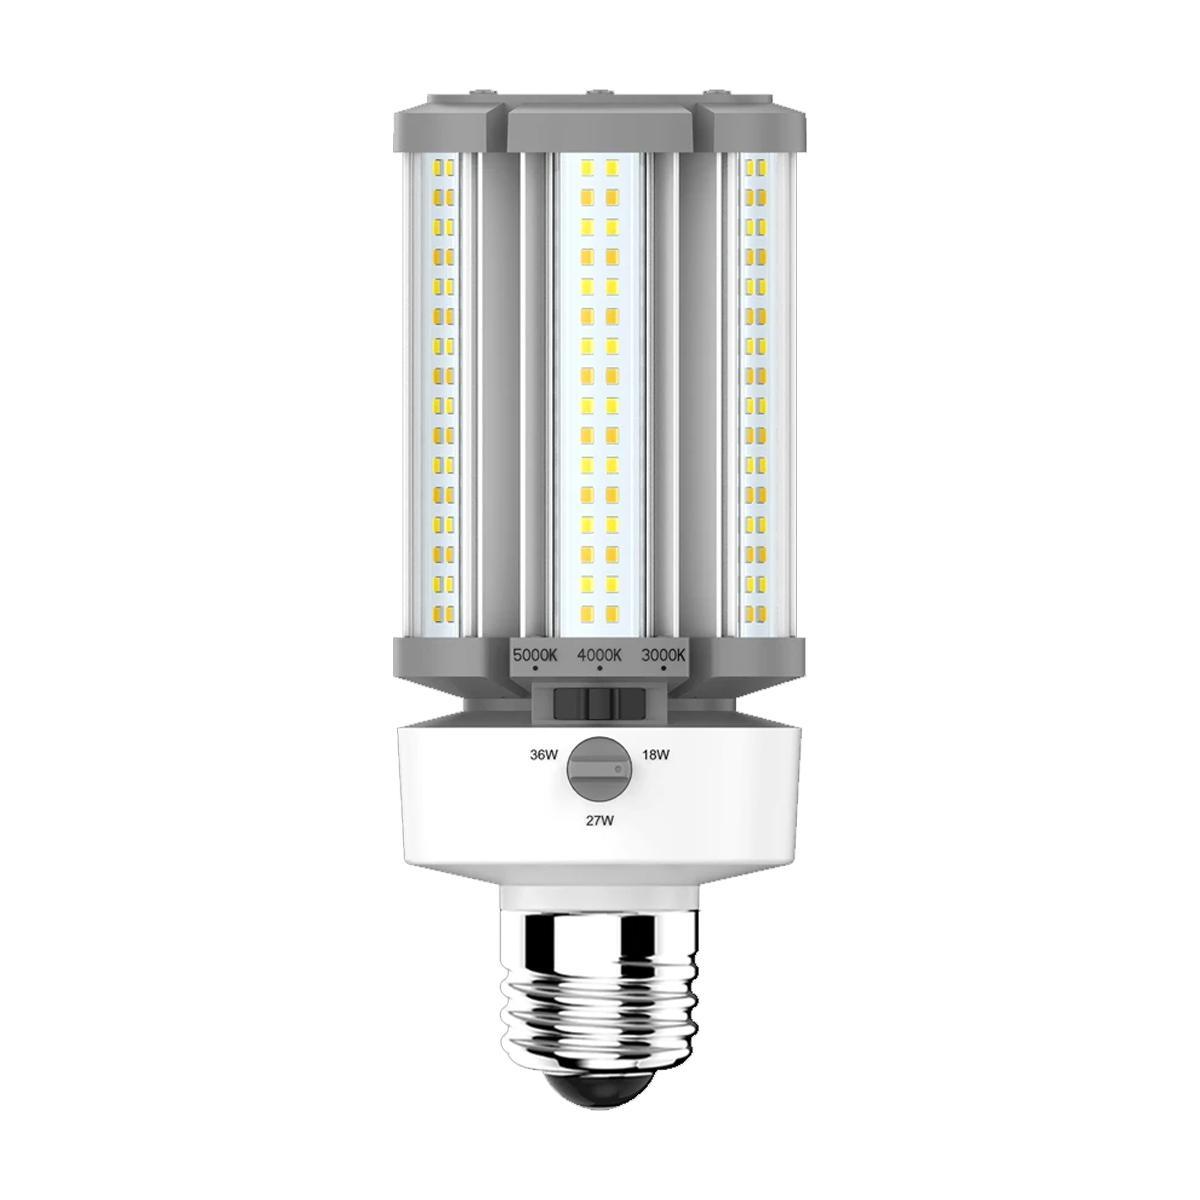 LED Corn Retrofit Lamp, 36W, 5220 Lumens, Field Adjustable, 30K/40K/50K, E26 Base, 120-277V